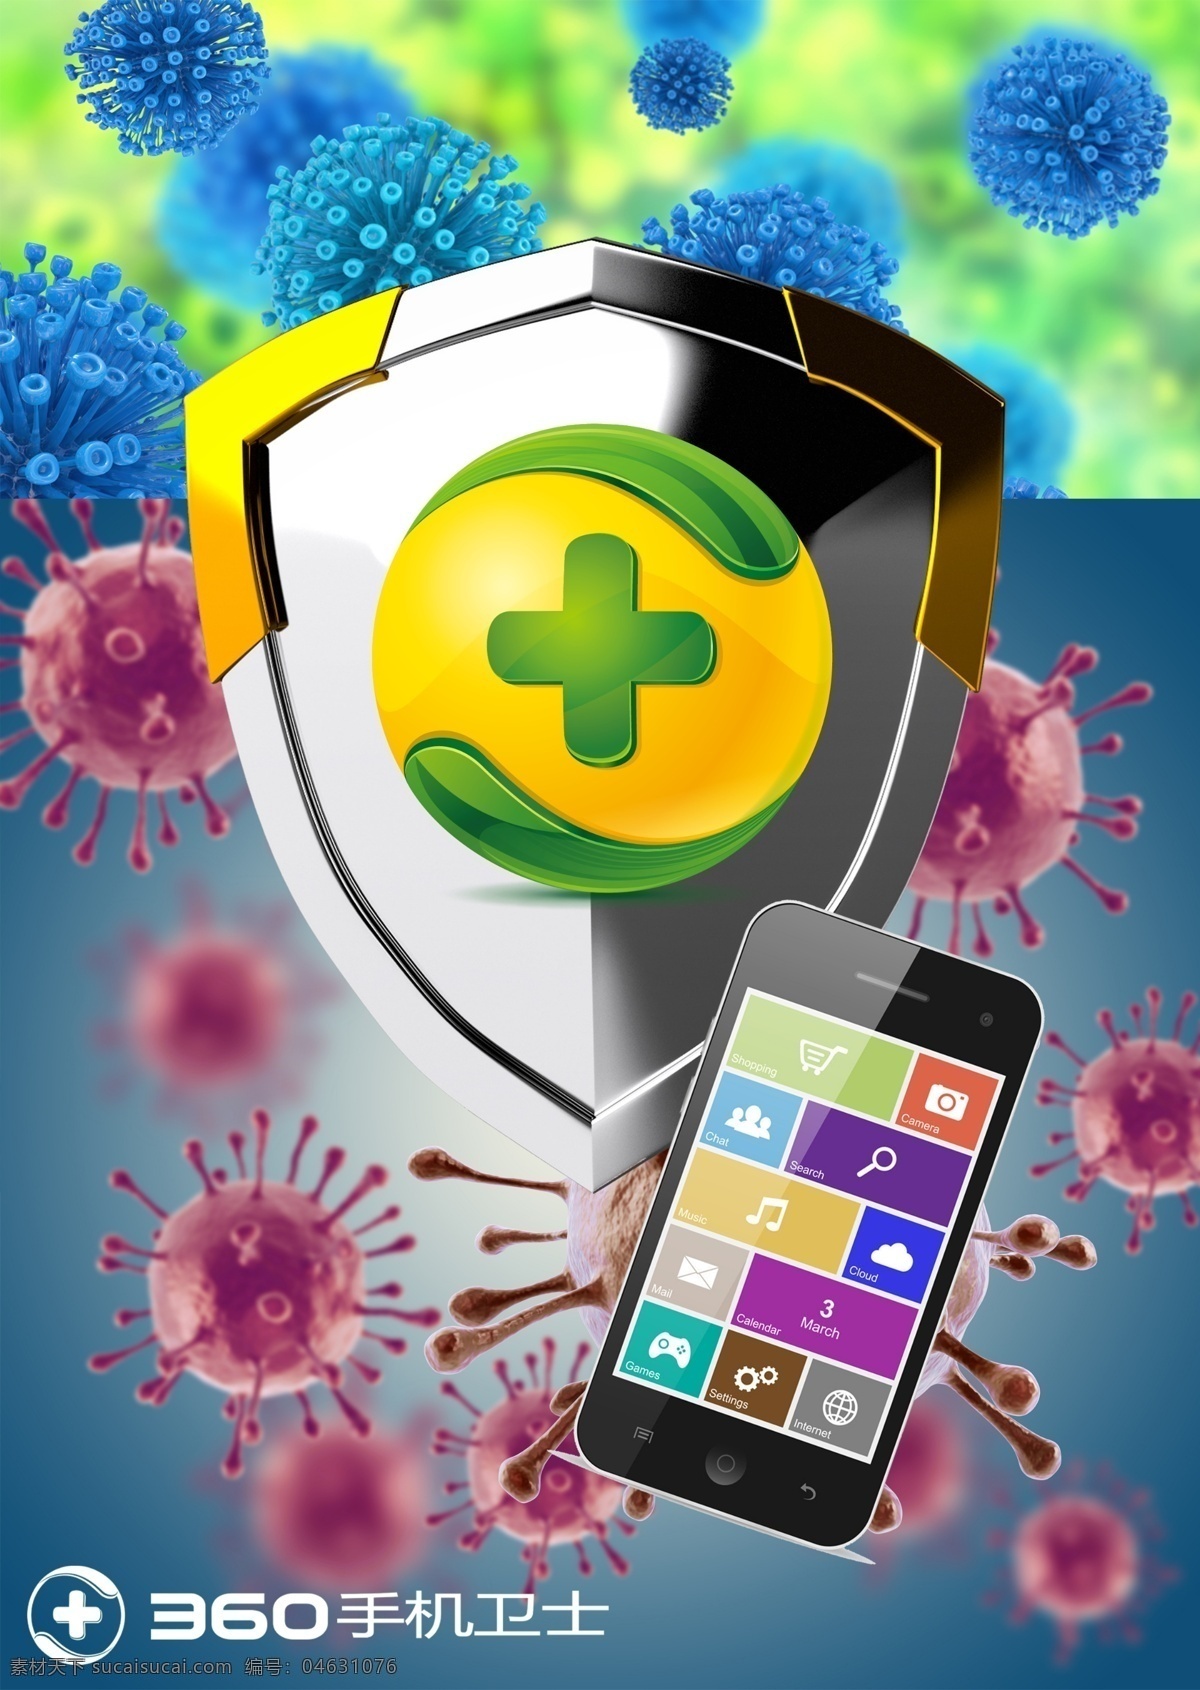 手机 卫士 手机安全 手机app 海报 招贴 盾牌 病毒 安全 防护 保护 招贴设计